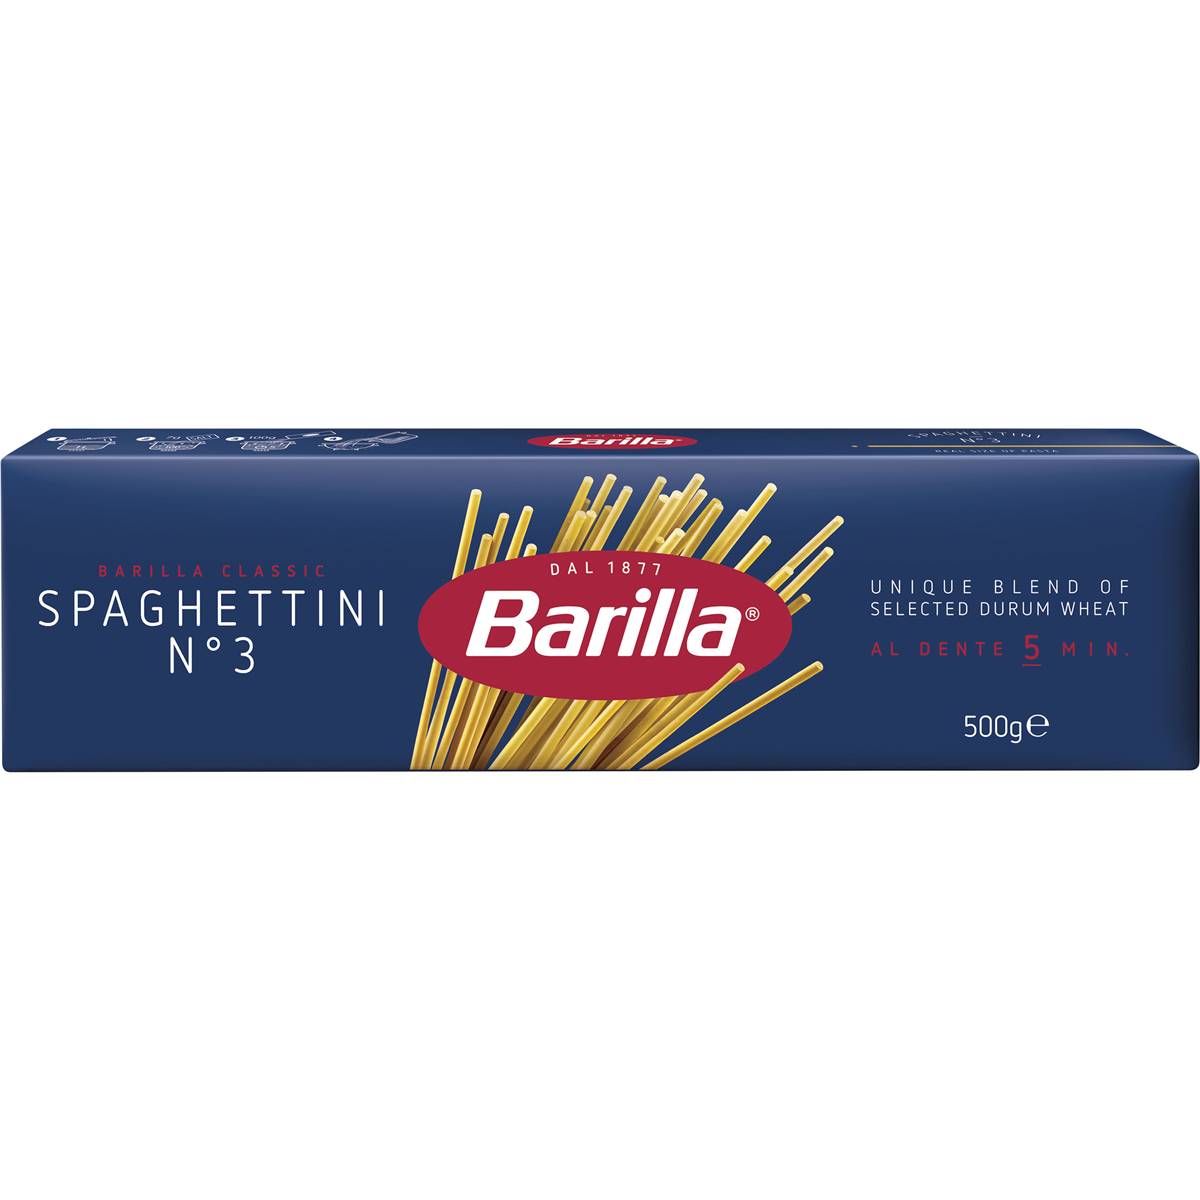 Barilla Spaghetti Spaghettini Pasta No 3